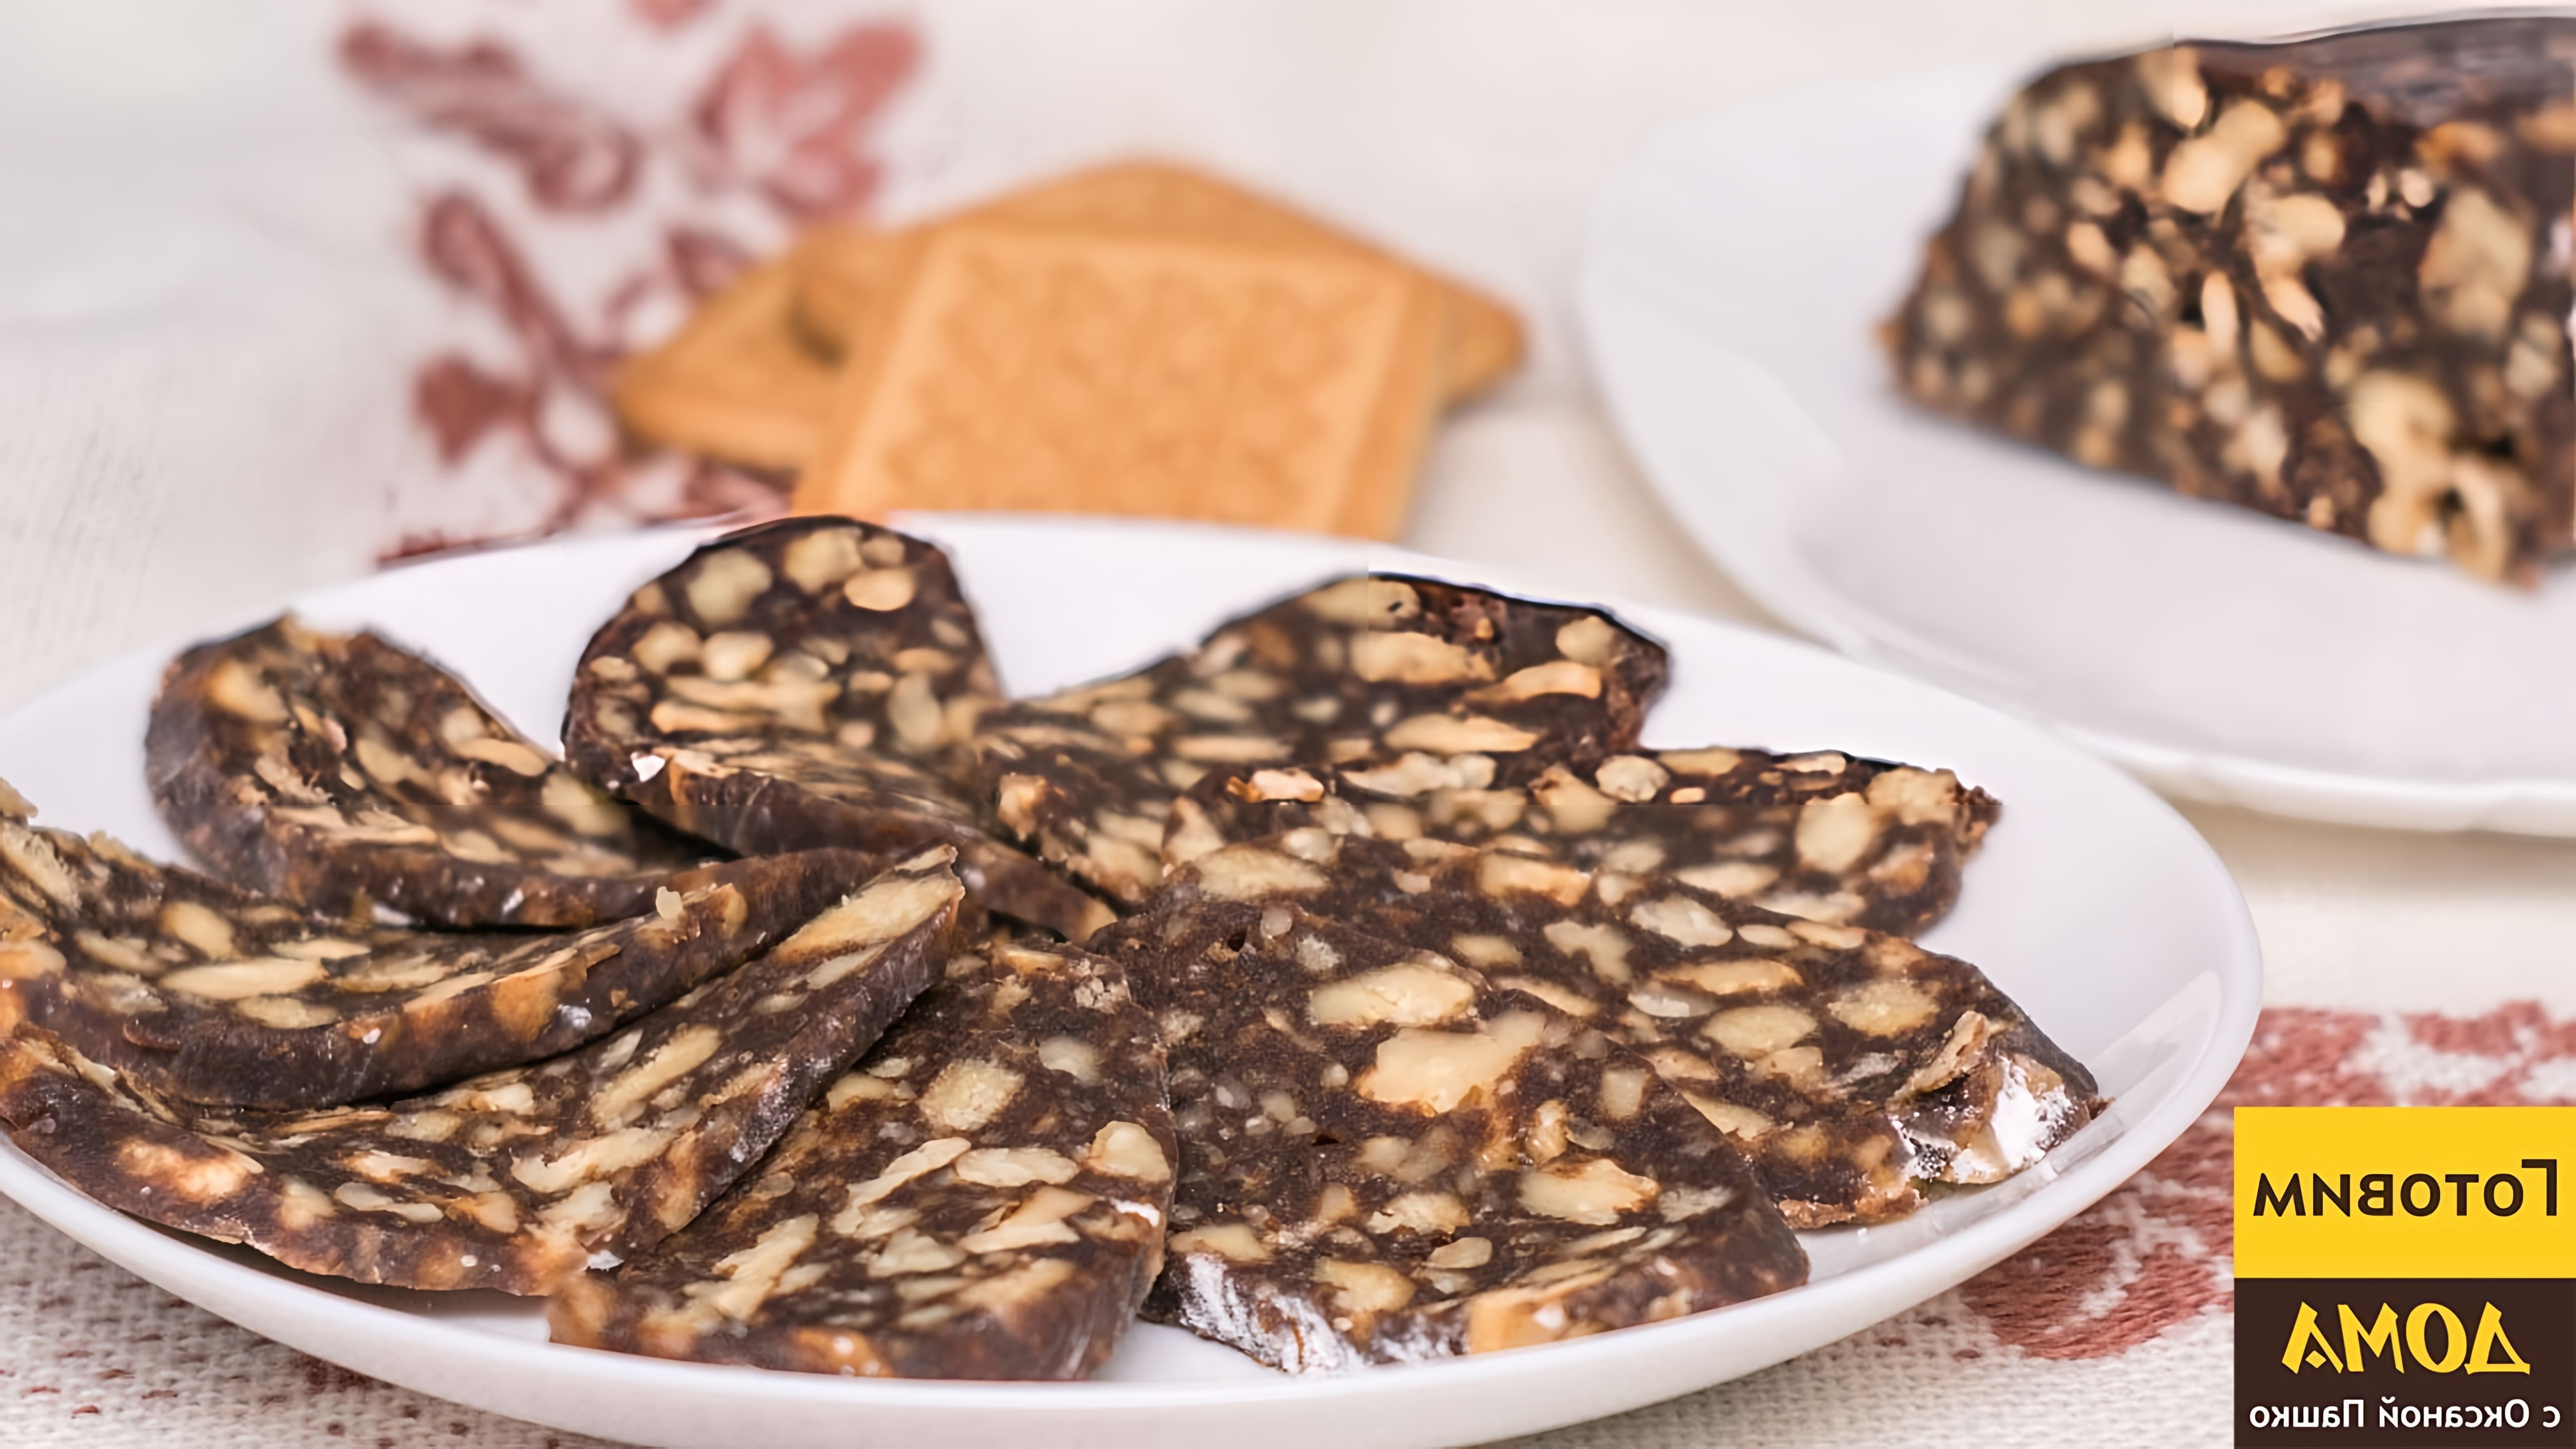 В этом видео демонстрируется процесс приготовления домашней шоколадной колбаски с орехами